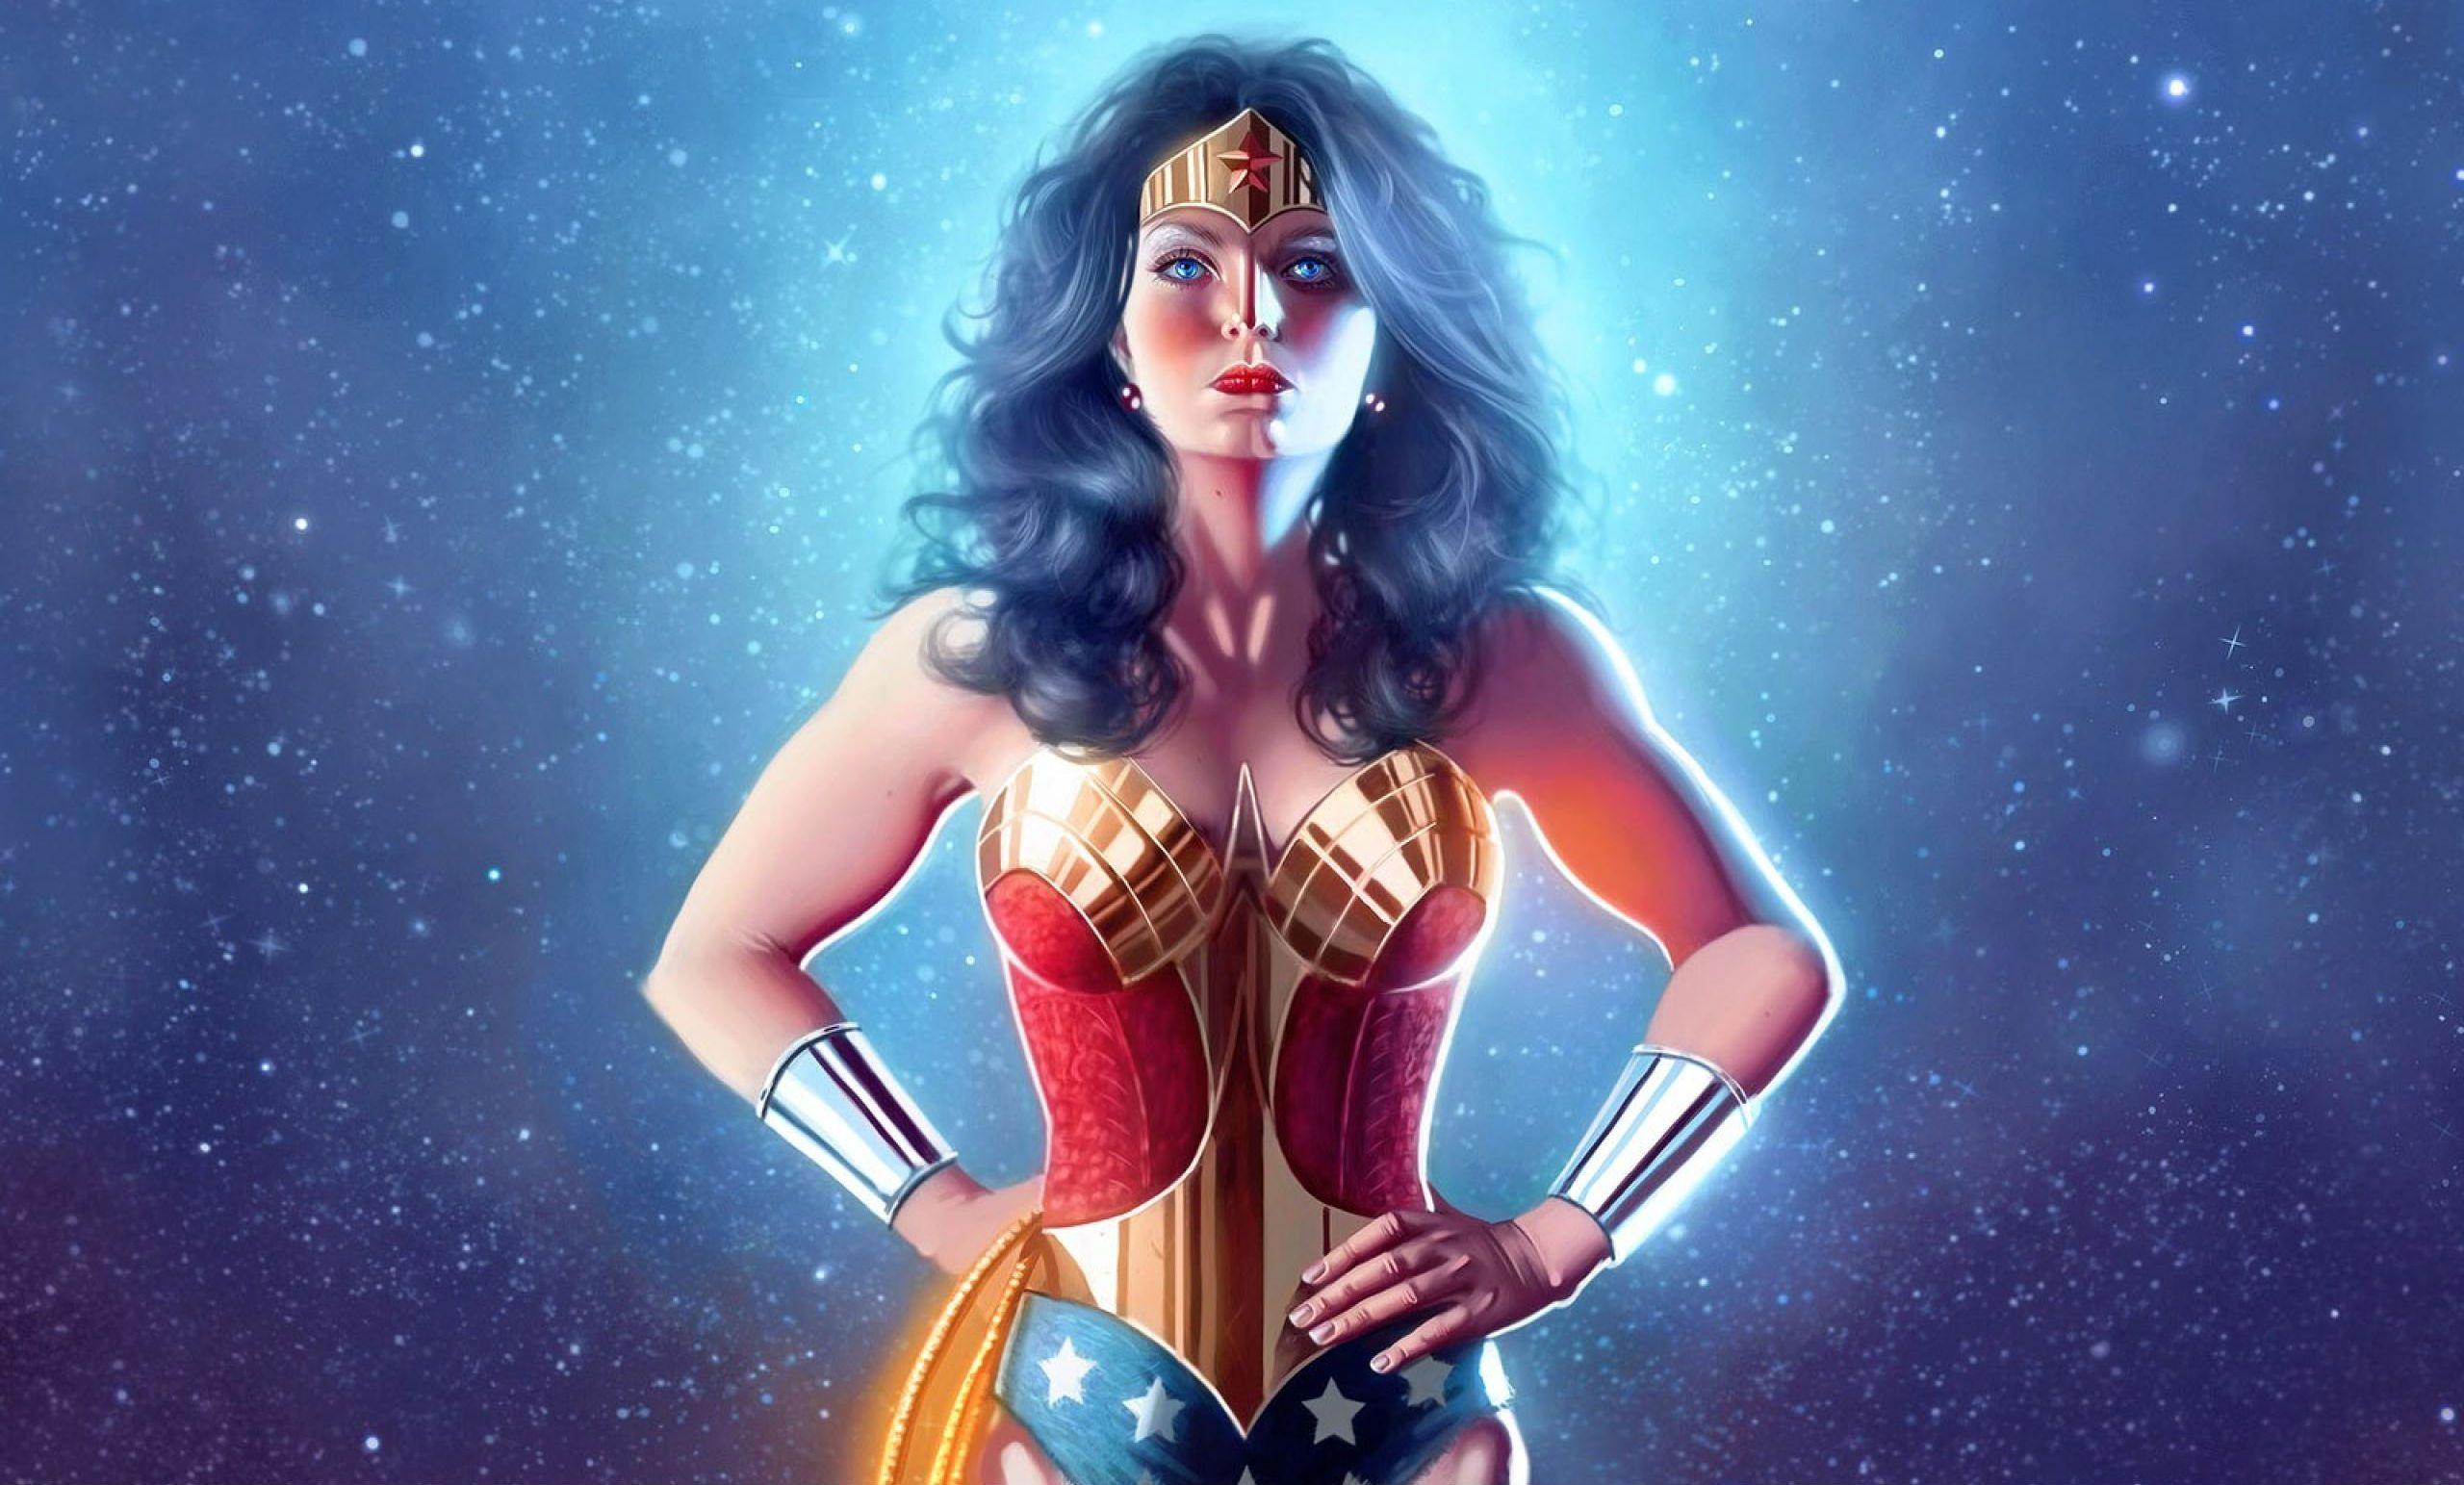 Download Female Superhero Wallpaper For Chrome